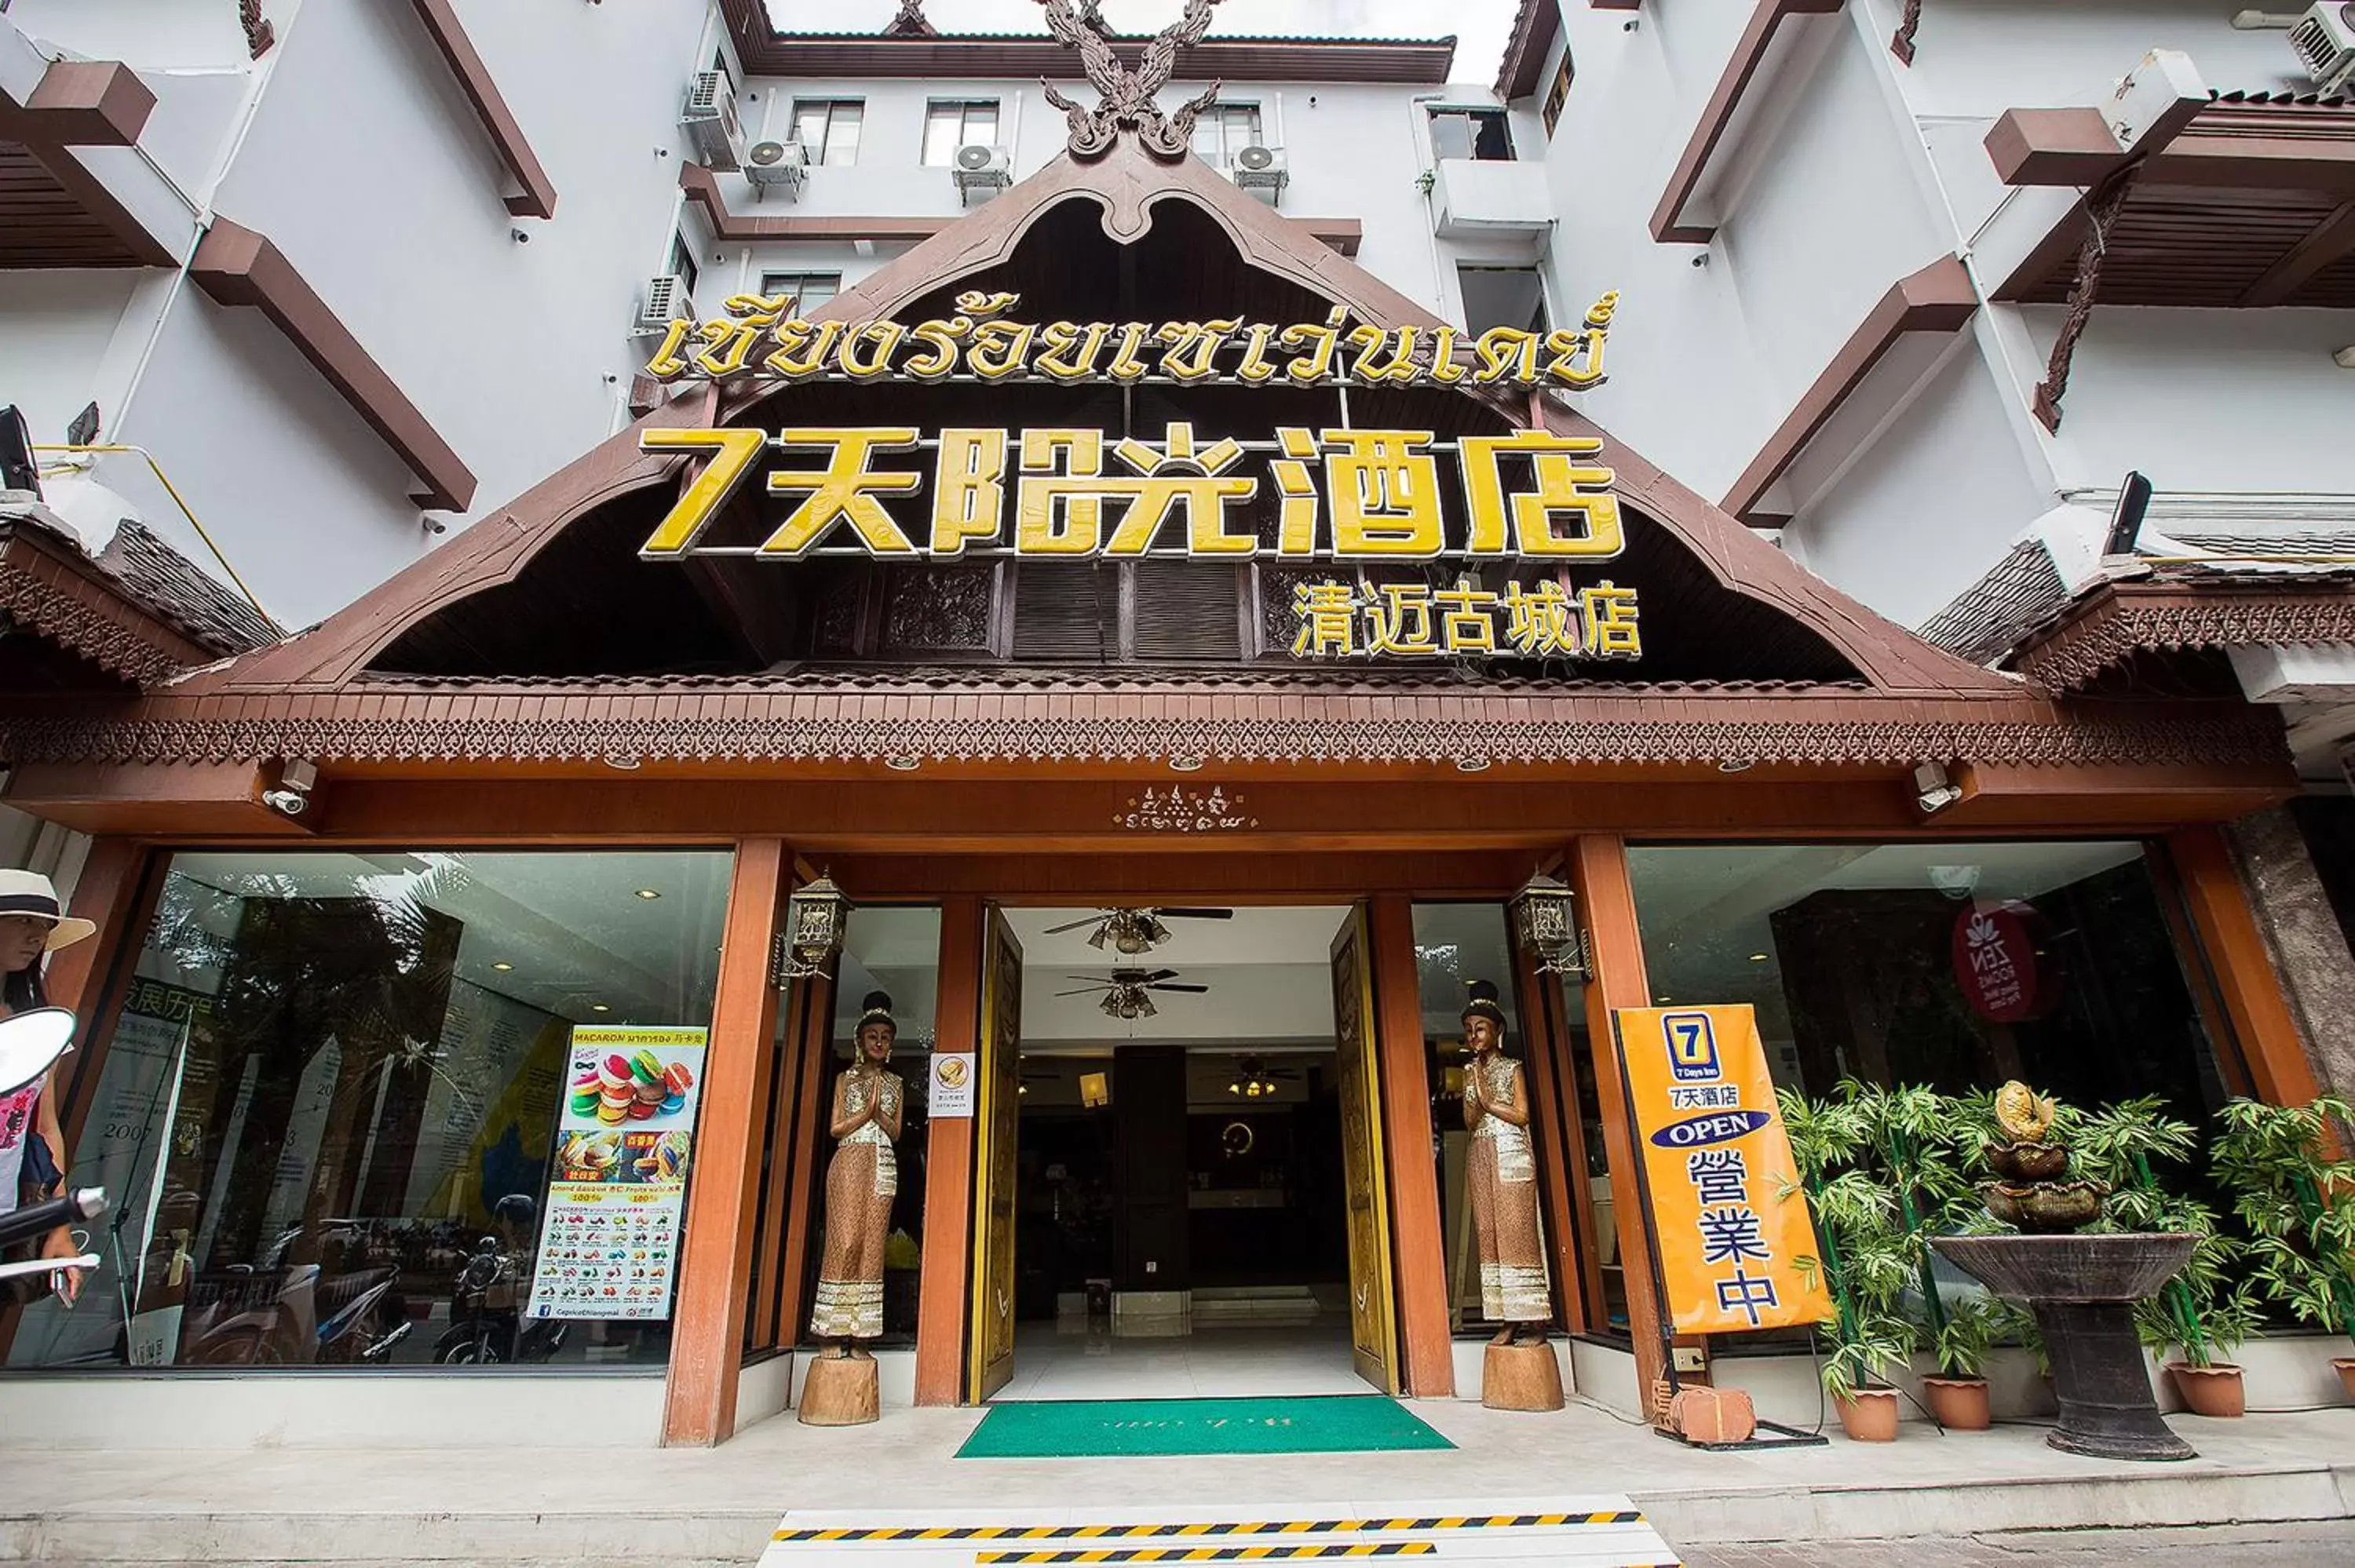 Facade/Entrance in Chiang Roi 7 Days Inn